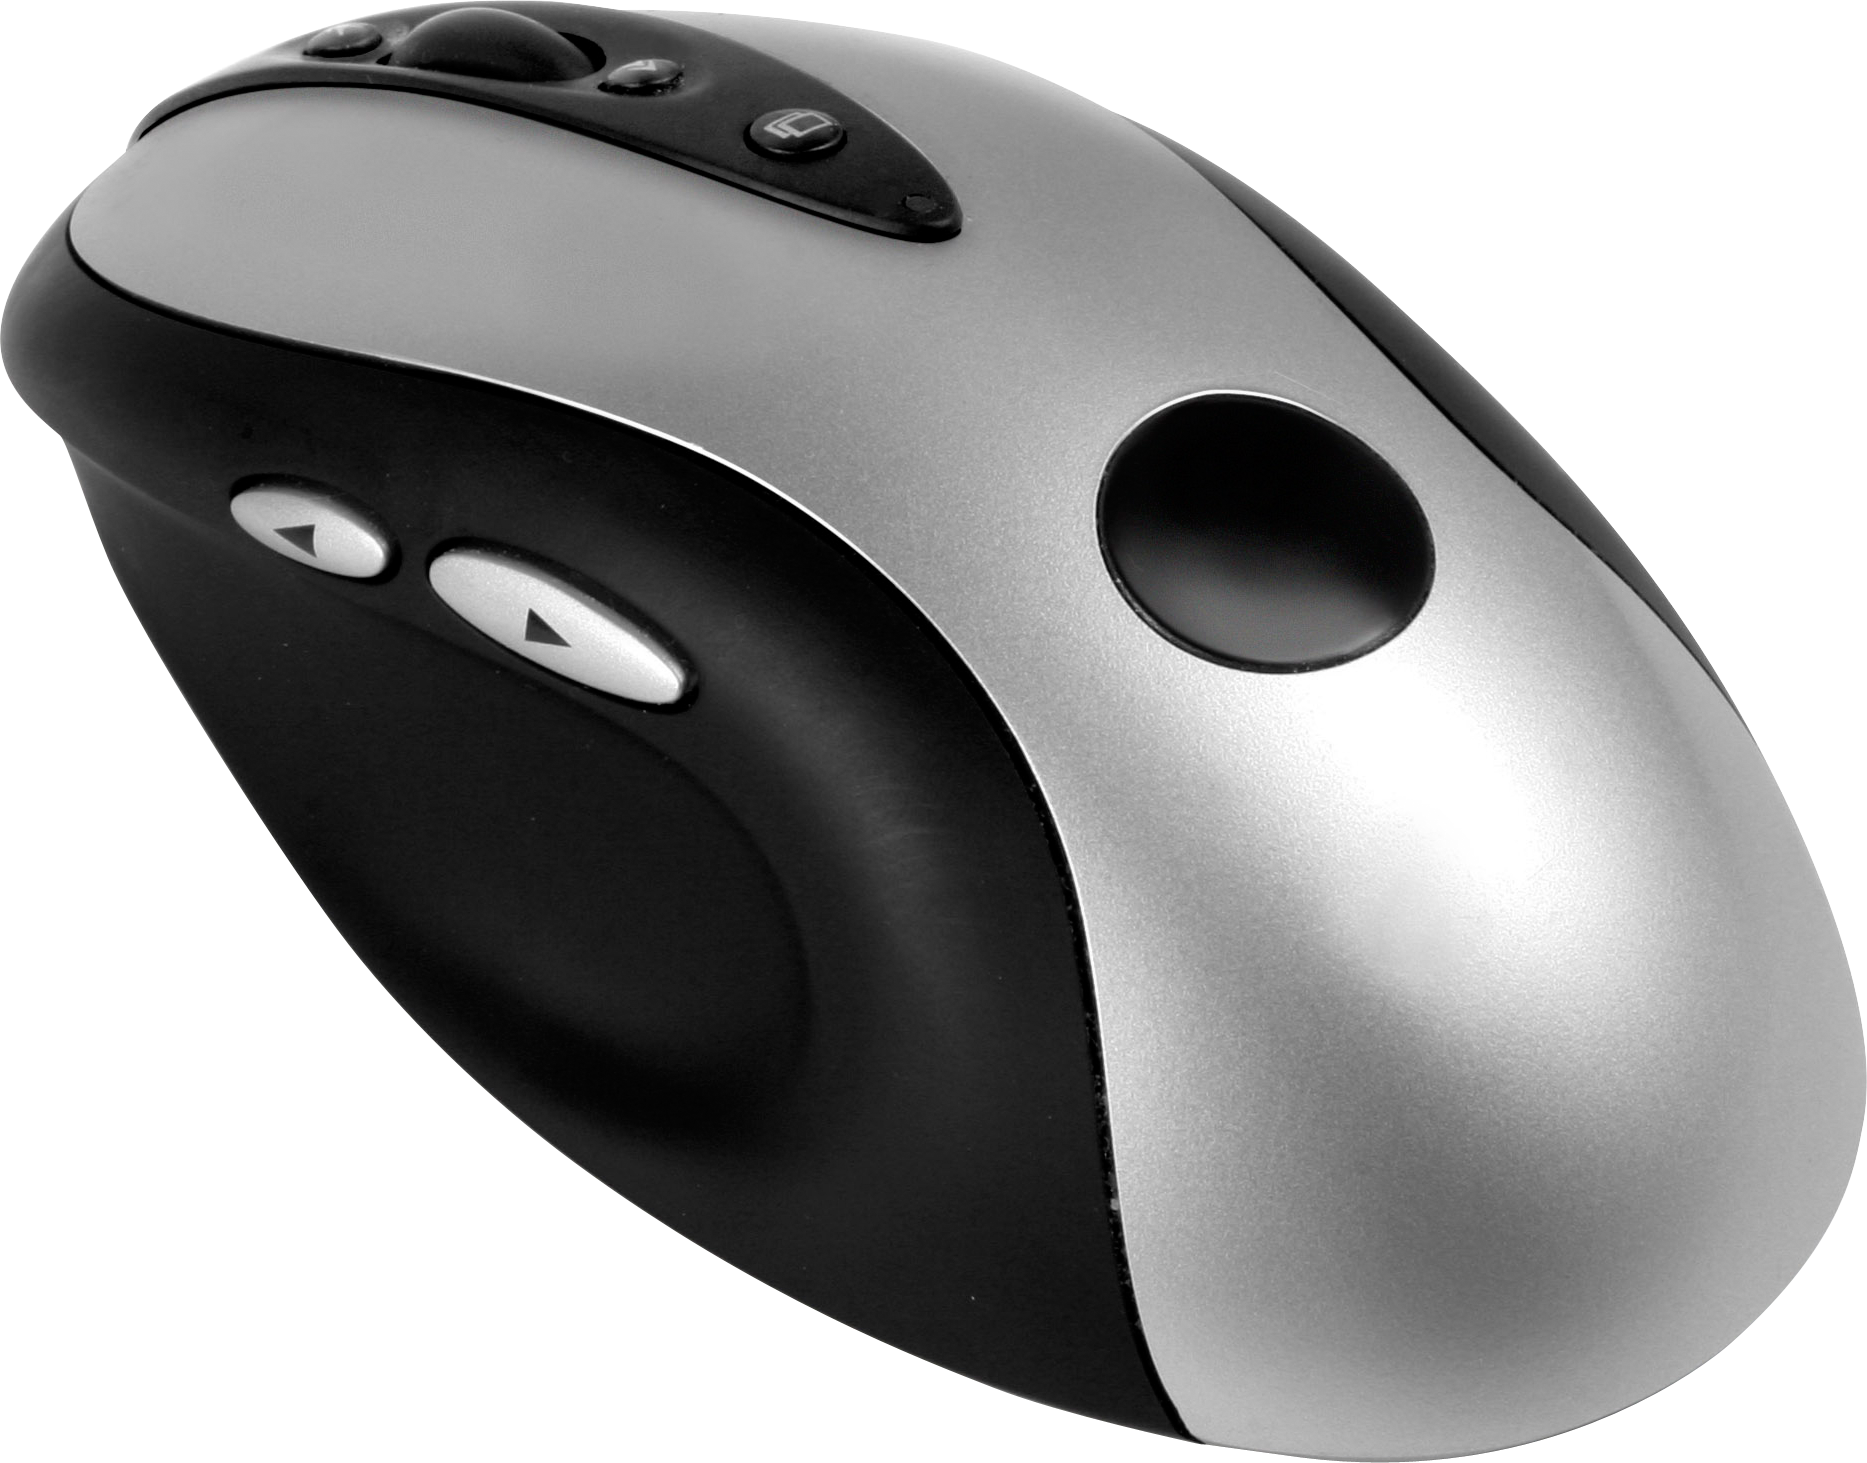 PC Mouse Transparent Images